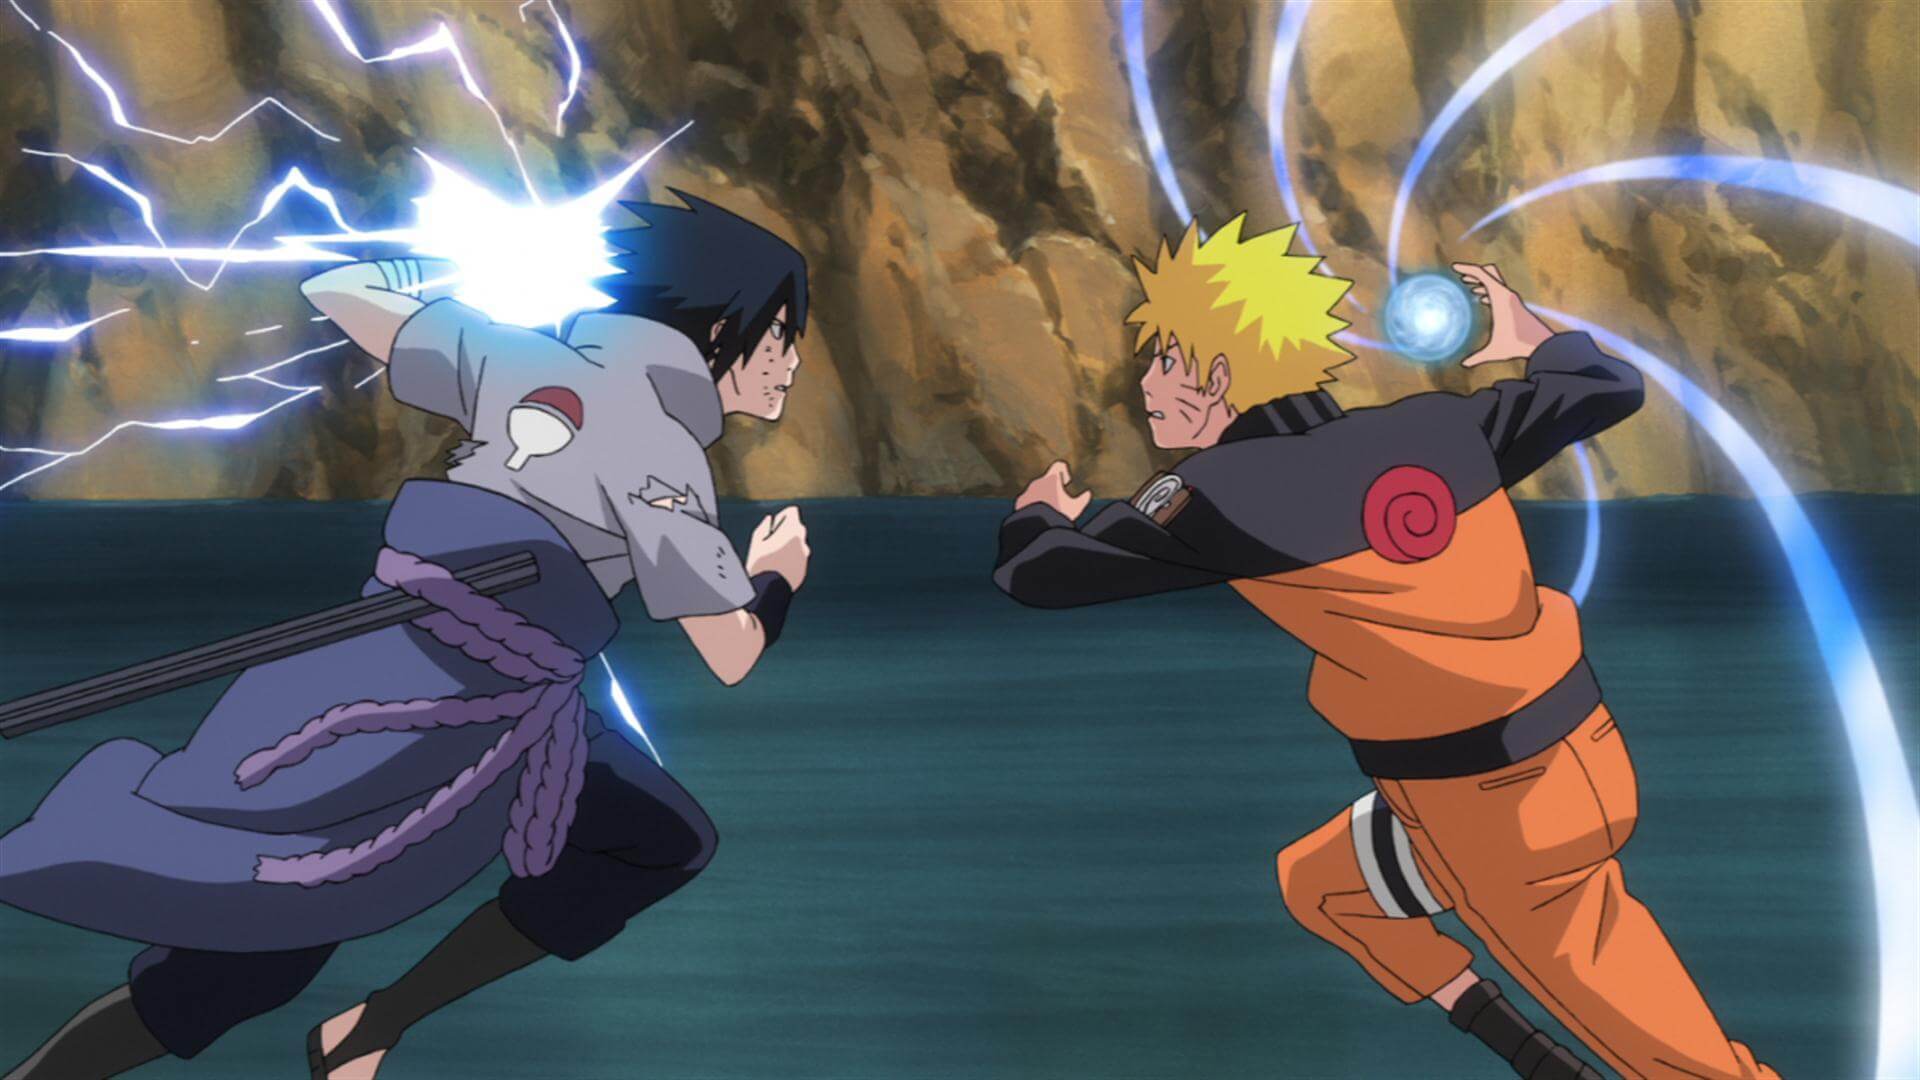 Os Rennegados De Konoha - Se você assistiu 700 episódios de Naruto e ainda  chama o Sasuke de revoltadinho sem motivo, faz favor, nem fala cmg não. Pq  vc não entendeu nadinha